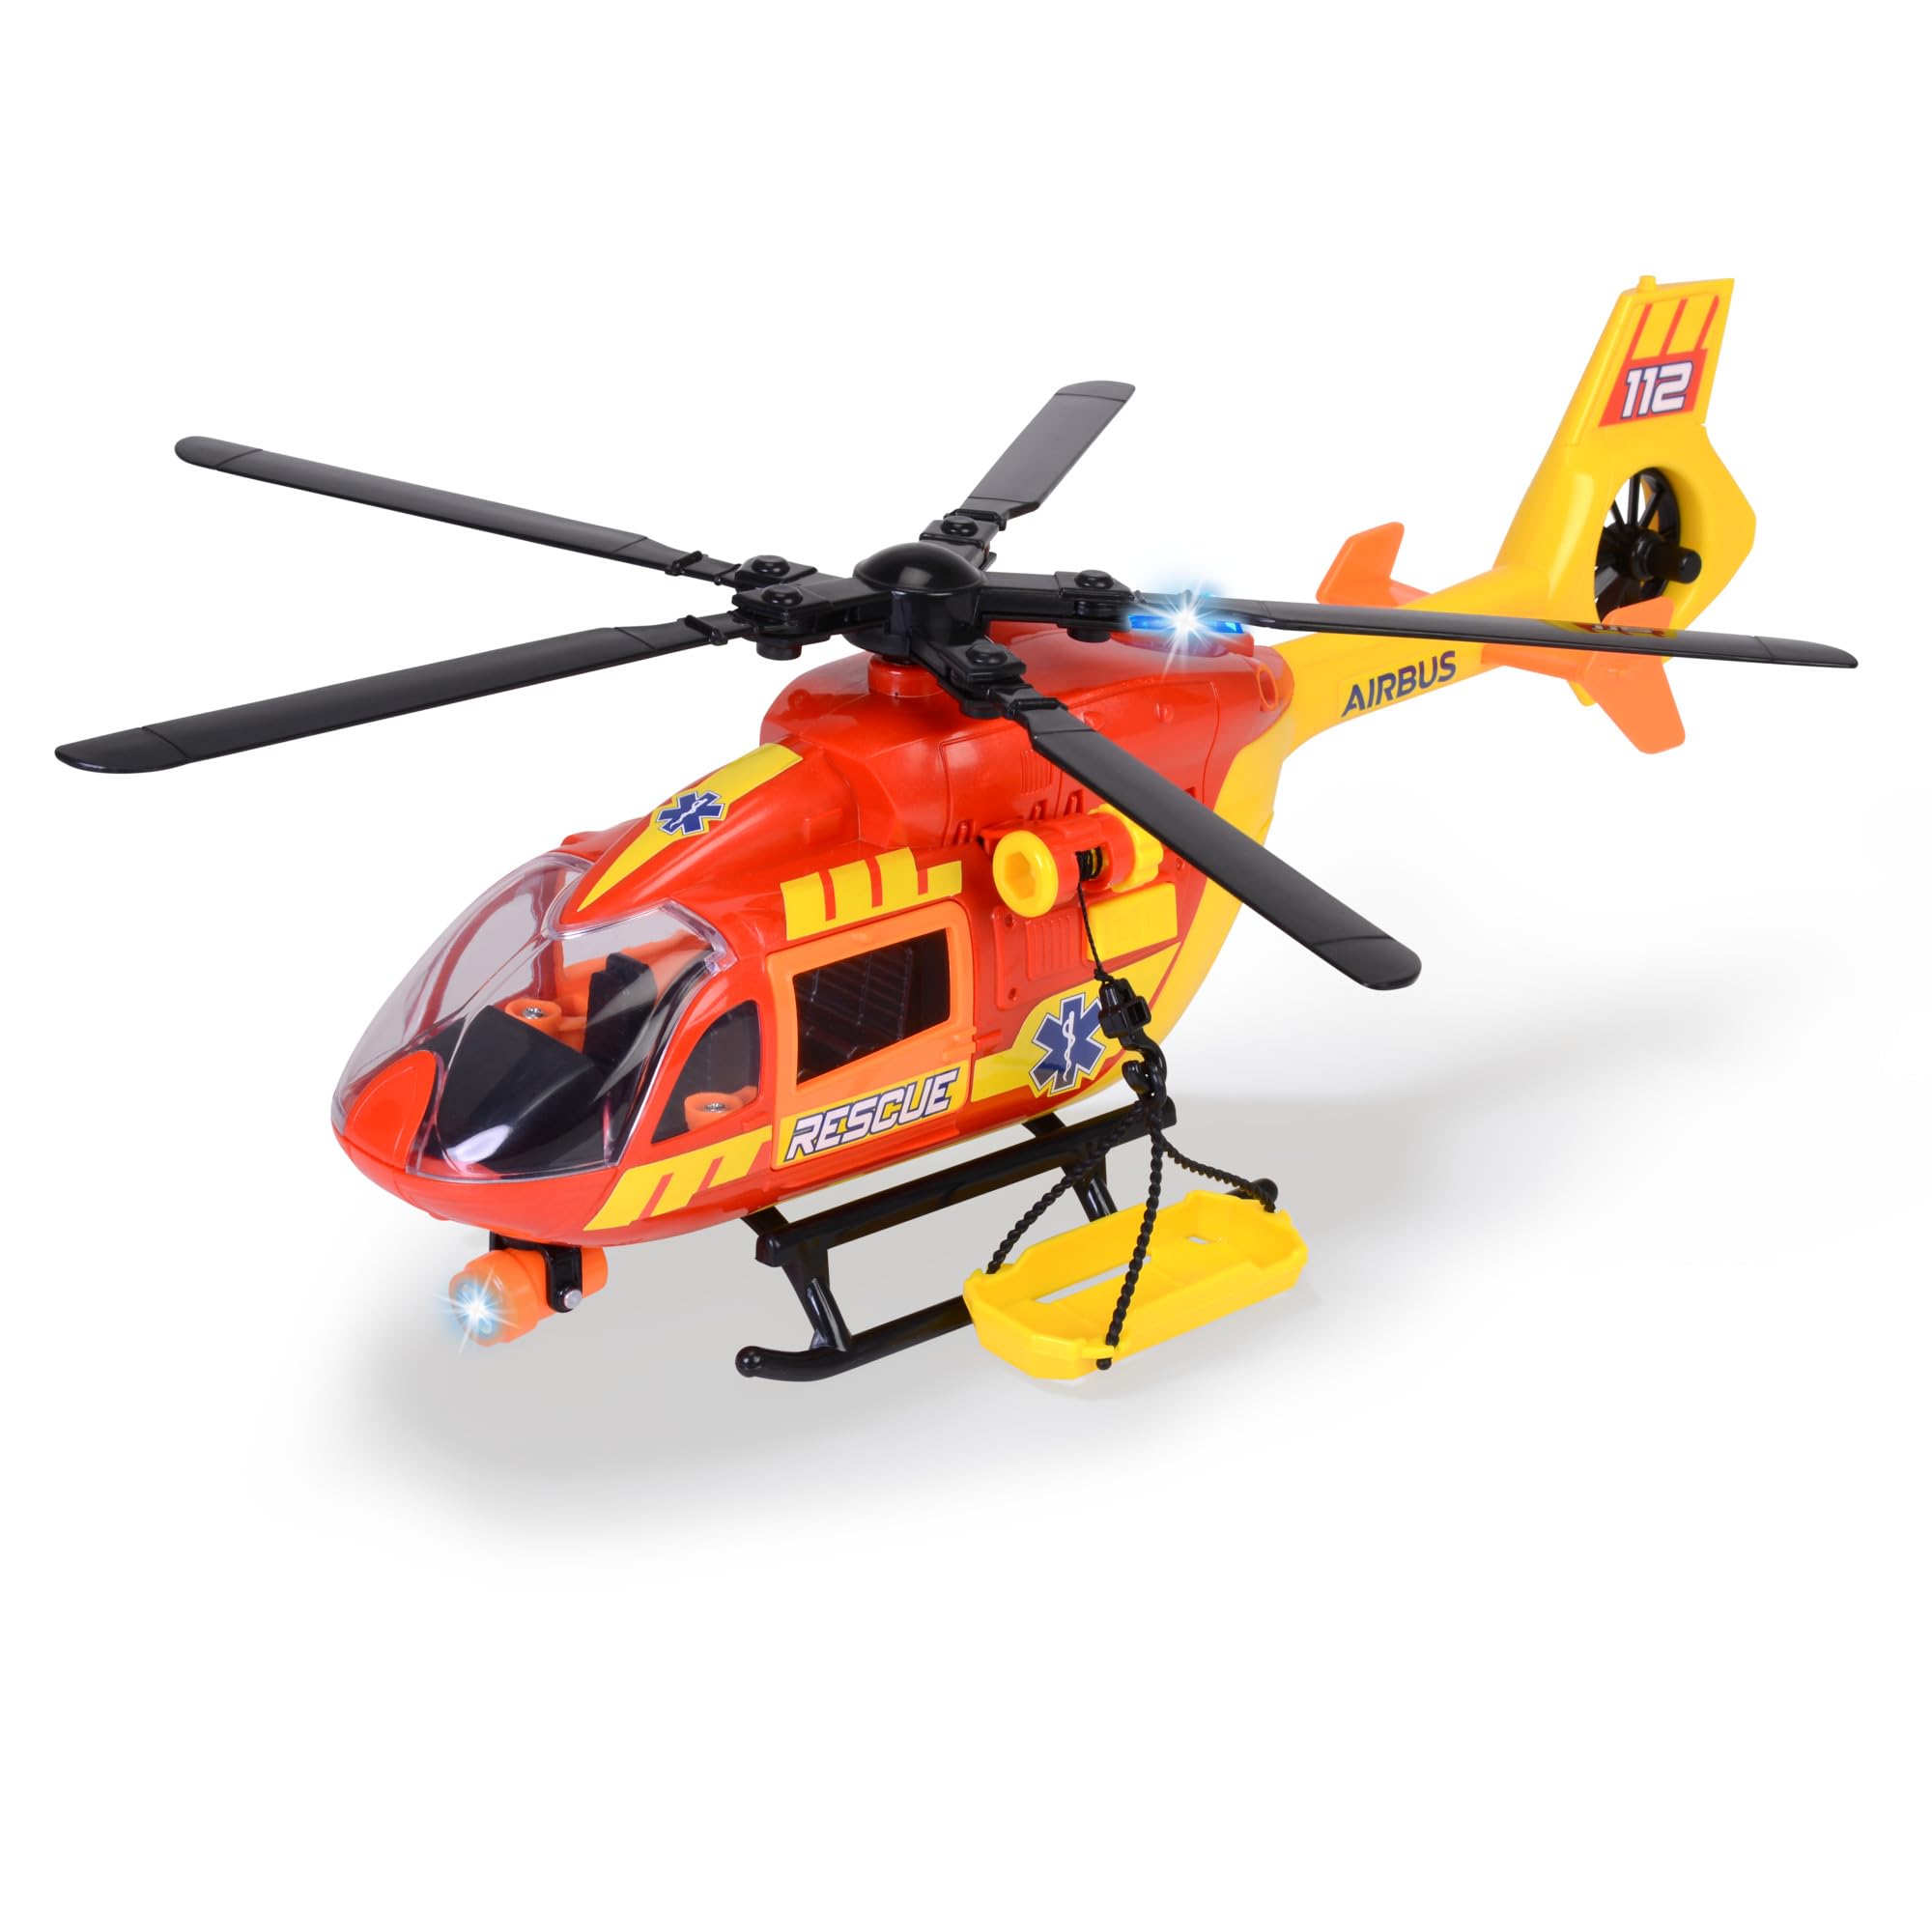 Dickie Toys - Rettungs-Hubschrauber Airbus H145 (36 cm) - Spielzeug-Helikopter mit Aufzieh-Propeller, Licht, Sound & Zubehör - Kinderspielzeug ab 3 Jahre